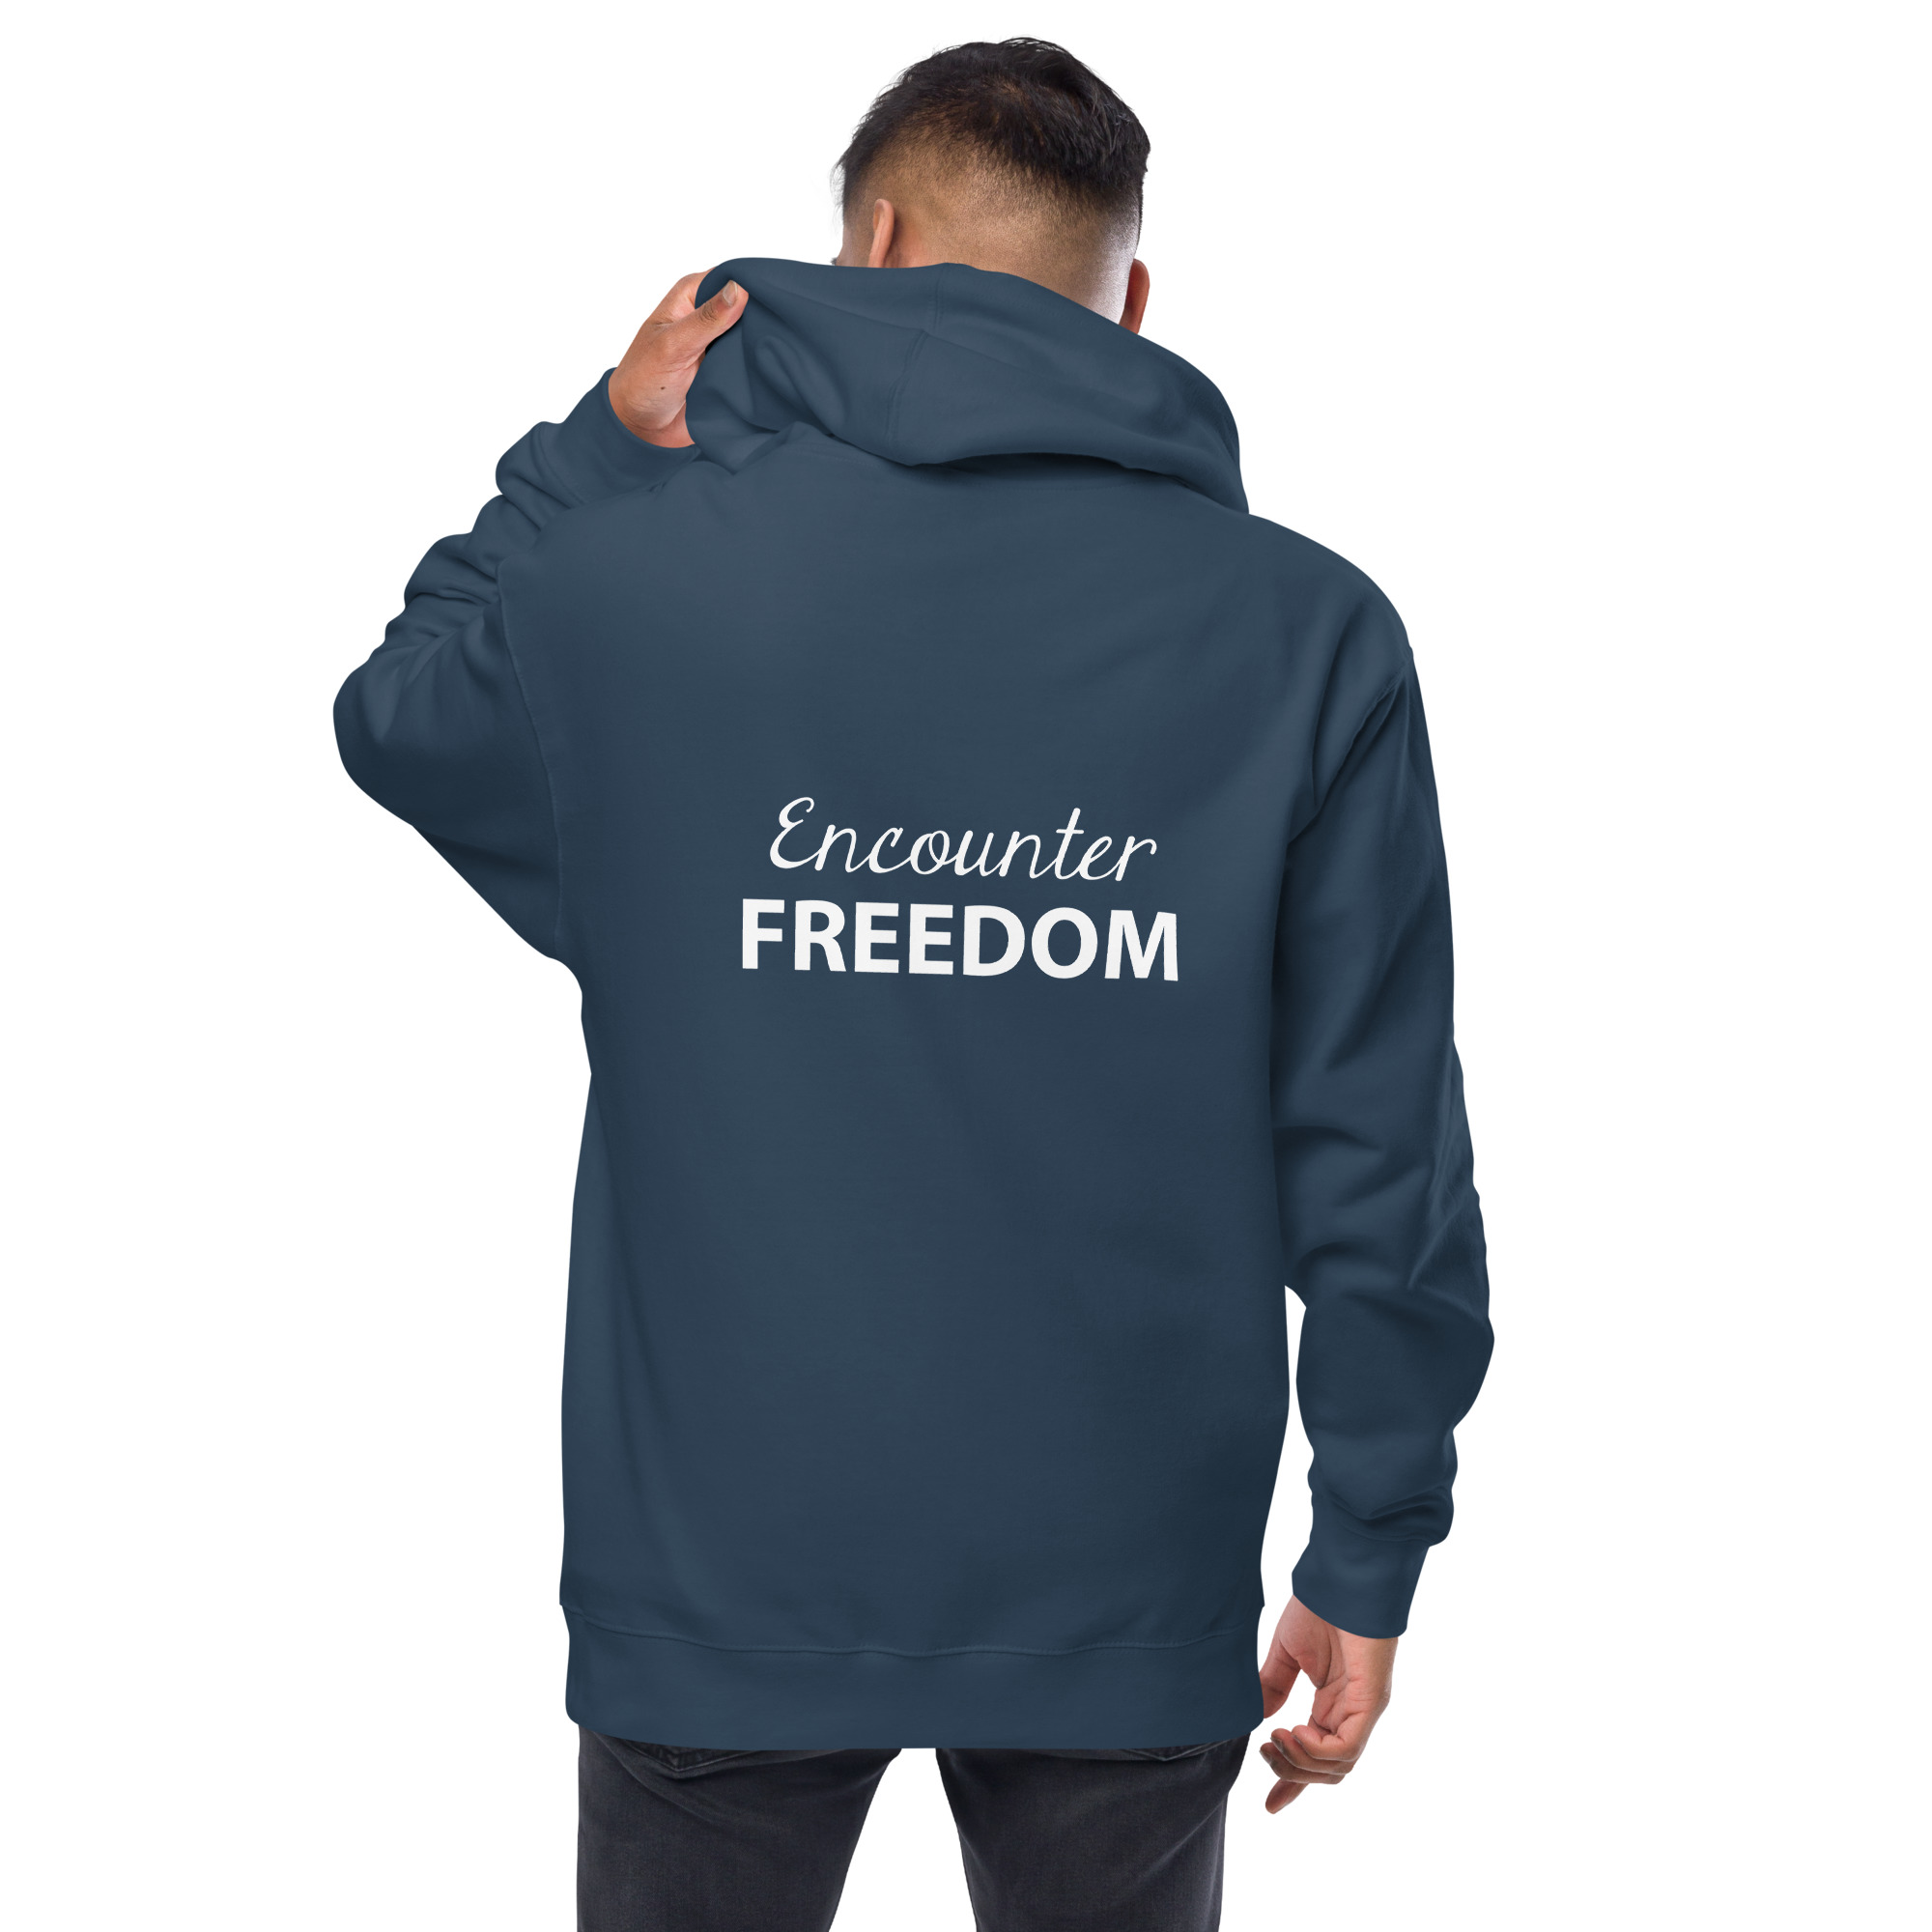 Encounter FREEDOM fleece zip up hoodie